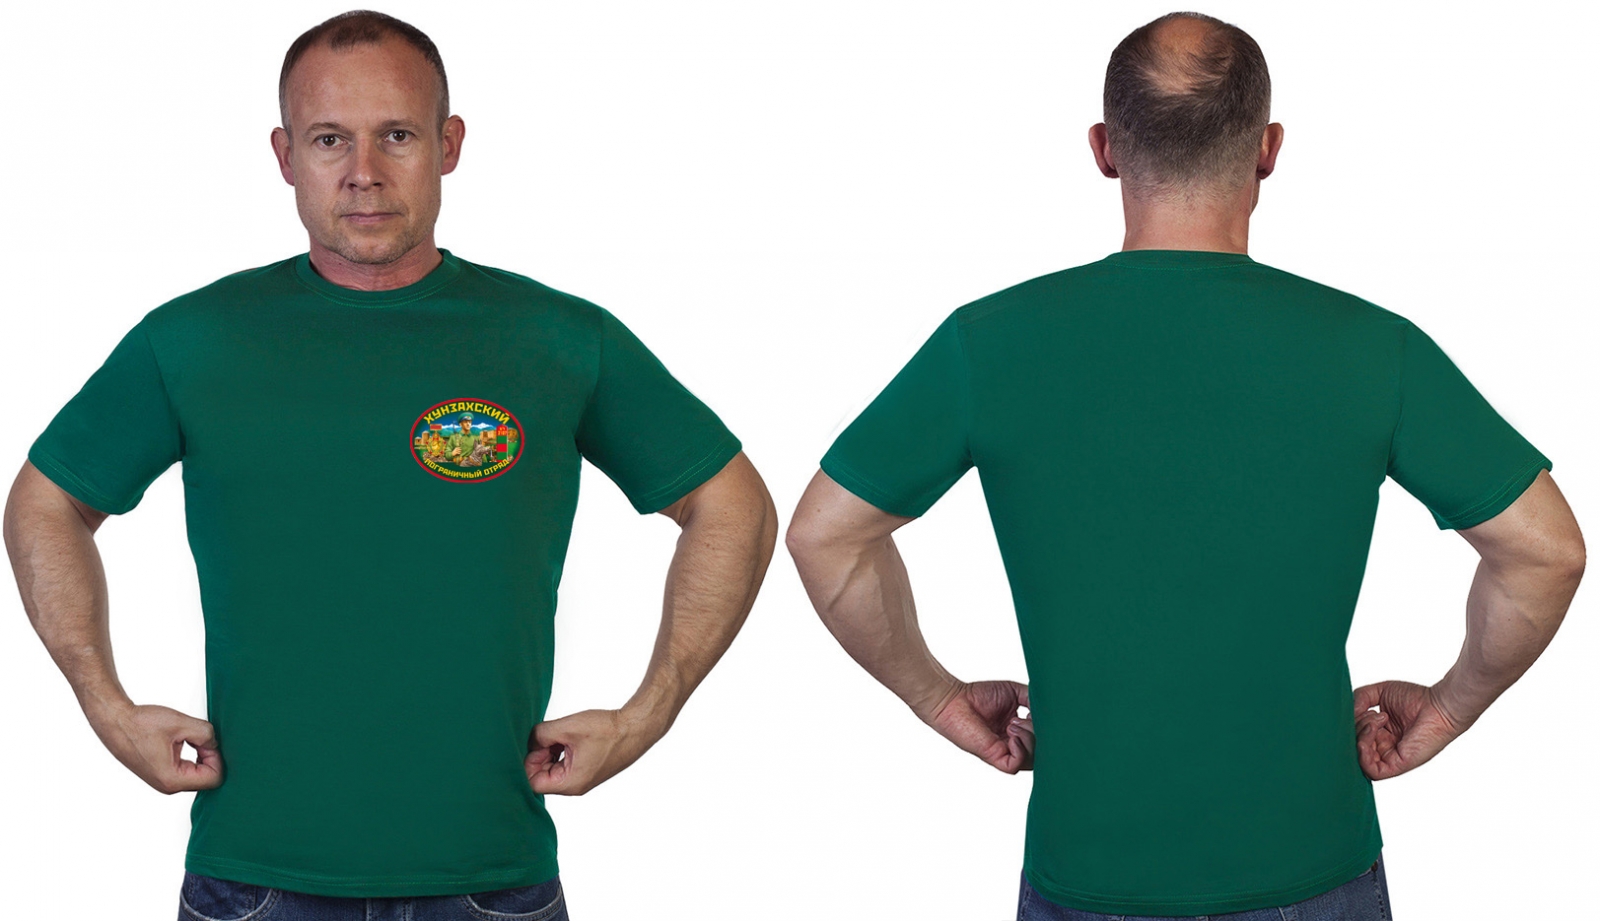 Зелёная футболка "Хунзахский пограничный отряд" 